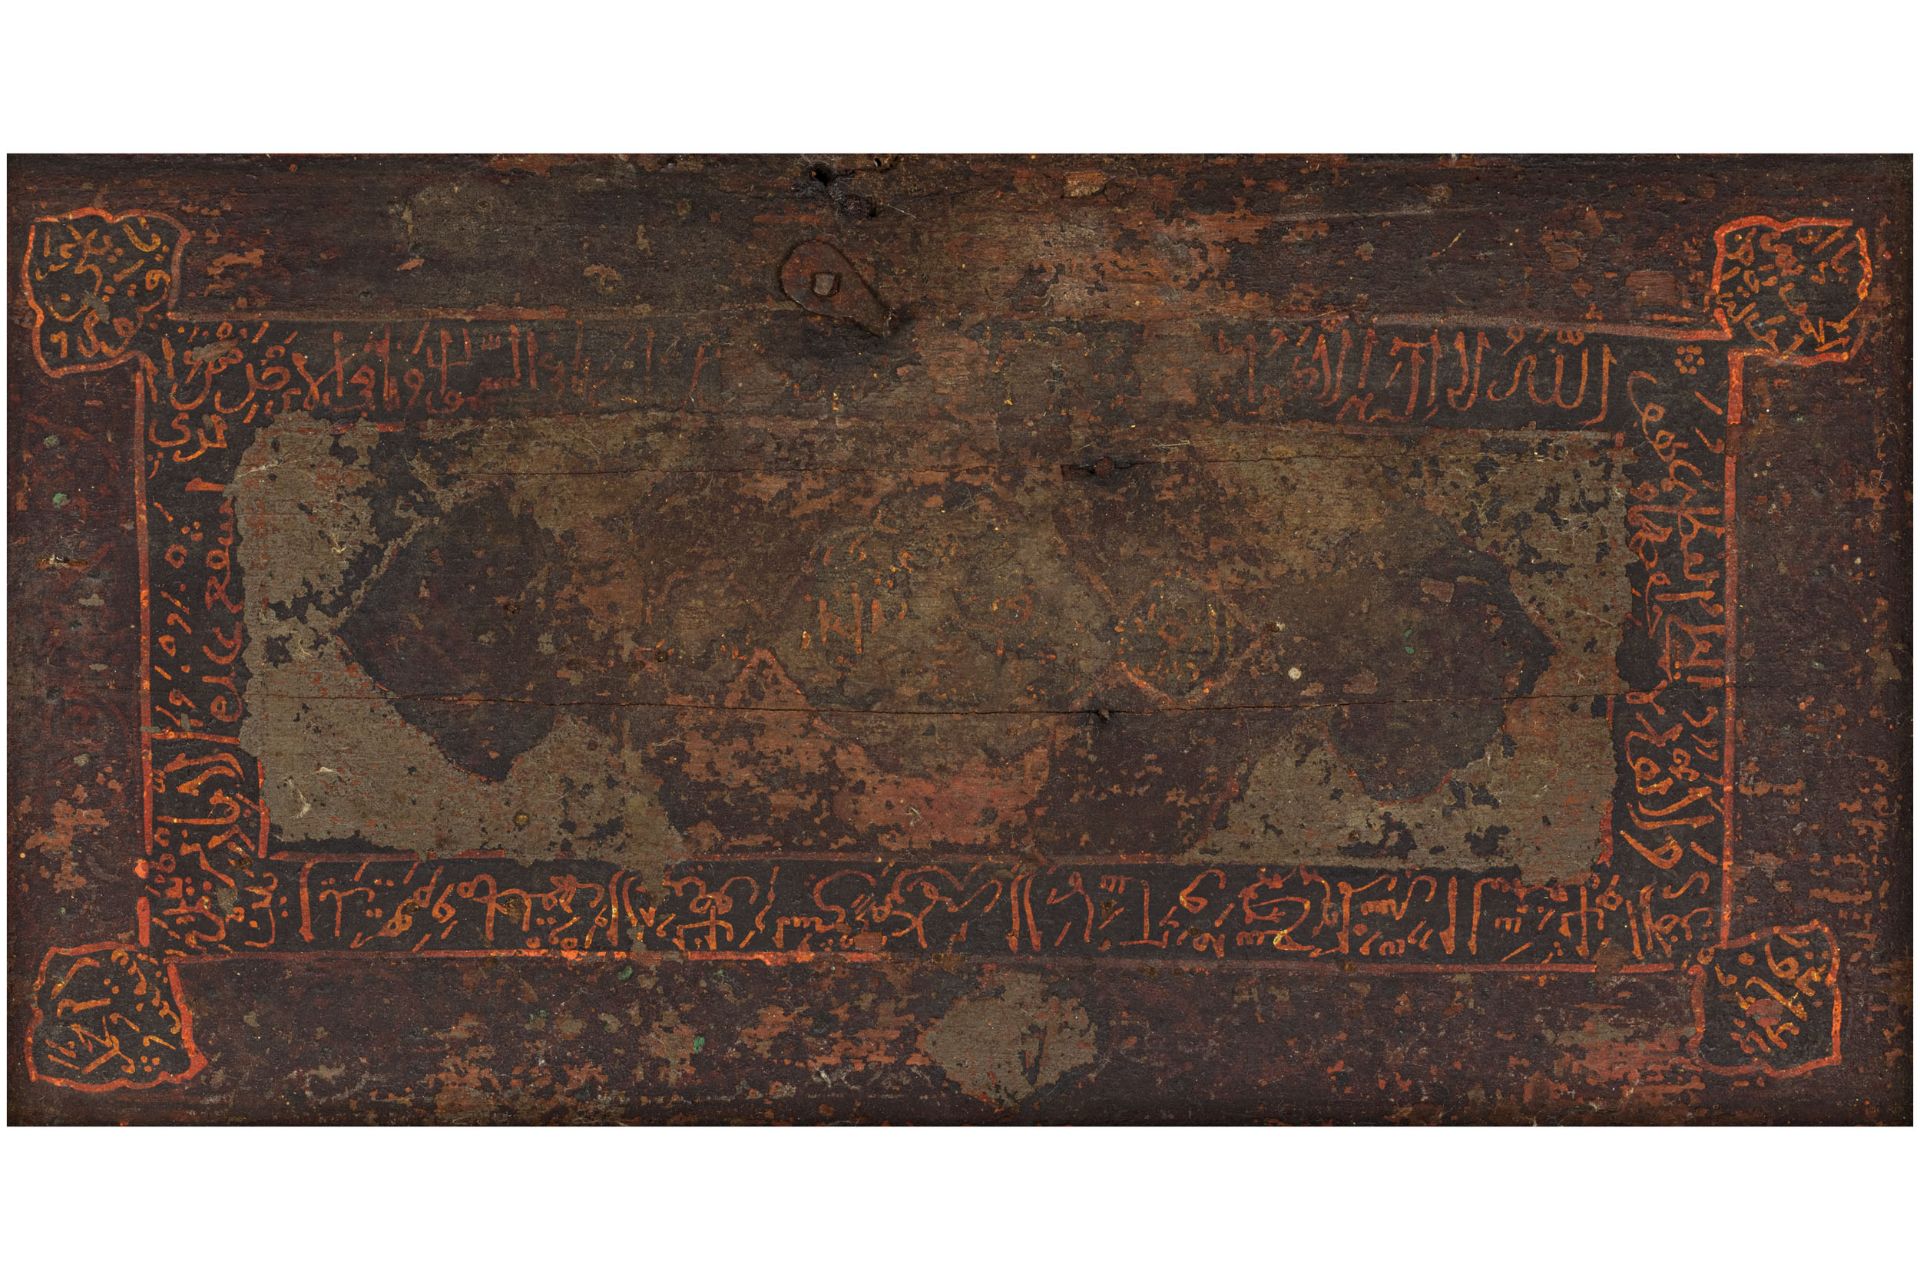 CASSETTA DA SCRIBA IN LEGNO E FERRO BATTUTO, MANIFATTURA INDO-PERSIANA, XVII-XVIII SECOLO - Bild 3 aus 3